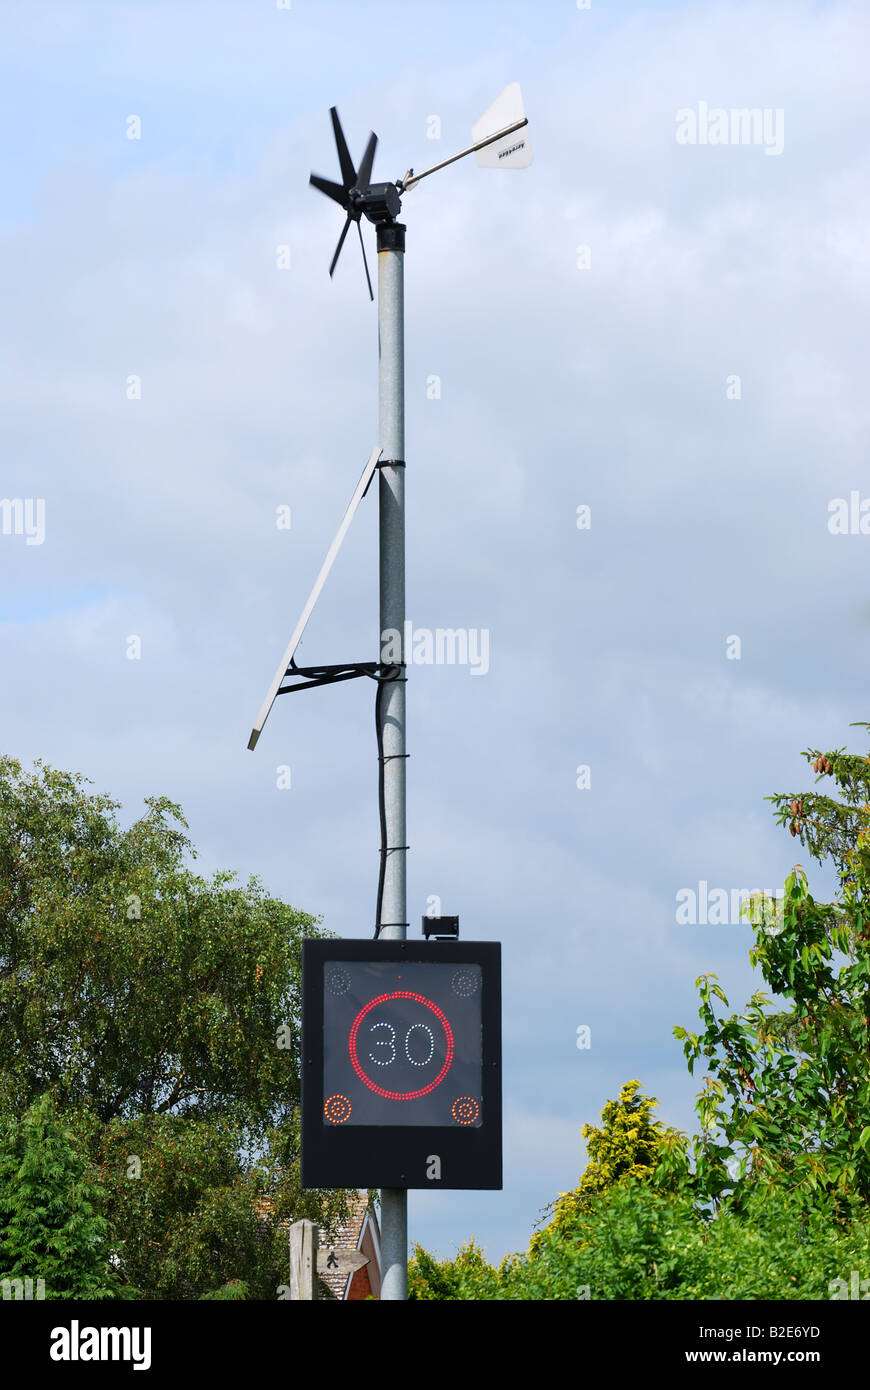 L'indicateur de vitesse routière avec turbine éolienne et panneau solaire, A46 road, Warwickshire, Angleterre, Royaume-Uni Banque D'Images